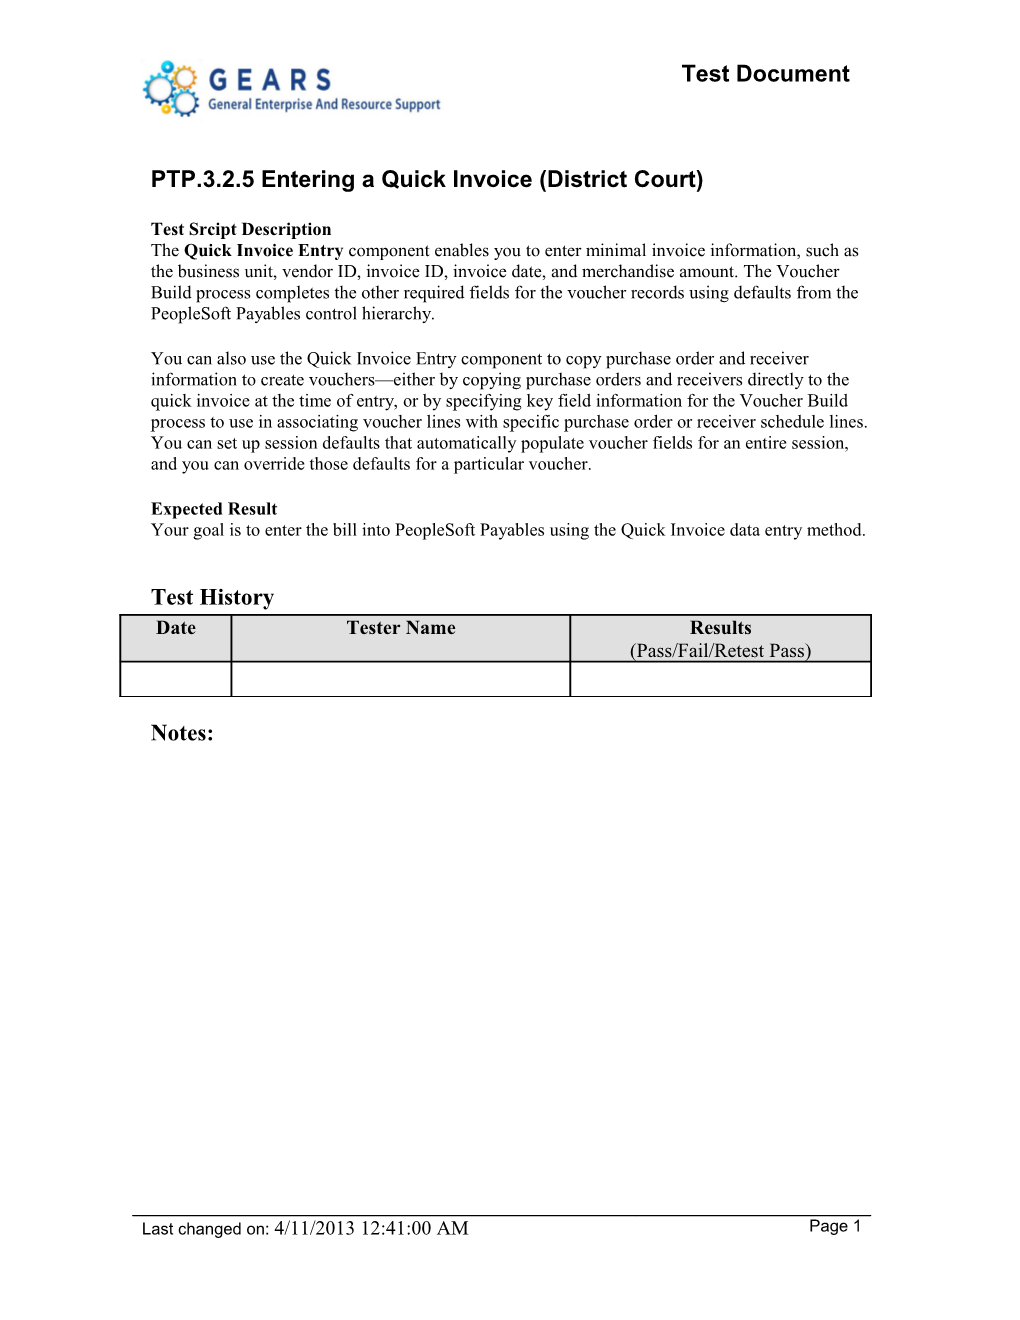 PTP.3.2.5 Entering a Quick Invoice (District Court)